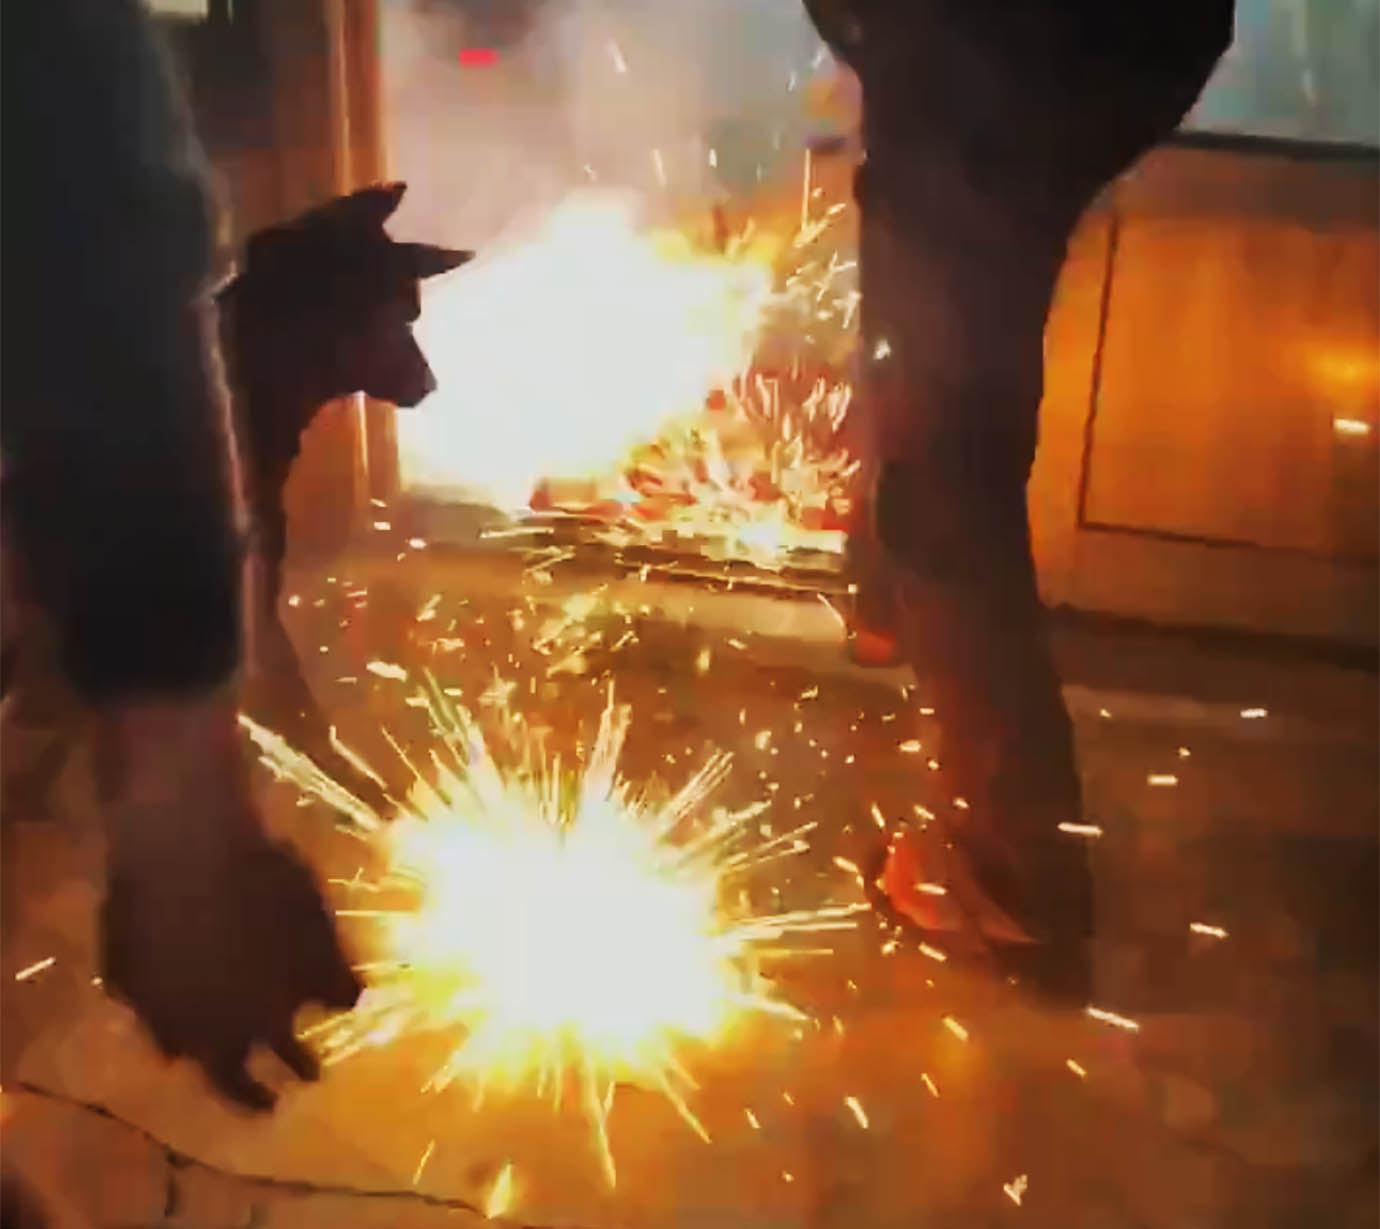 【衝撃動画】犬が火がついた花火を家に持ち込んで大騒動 / 花火が室内で大爆発